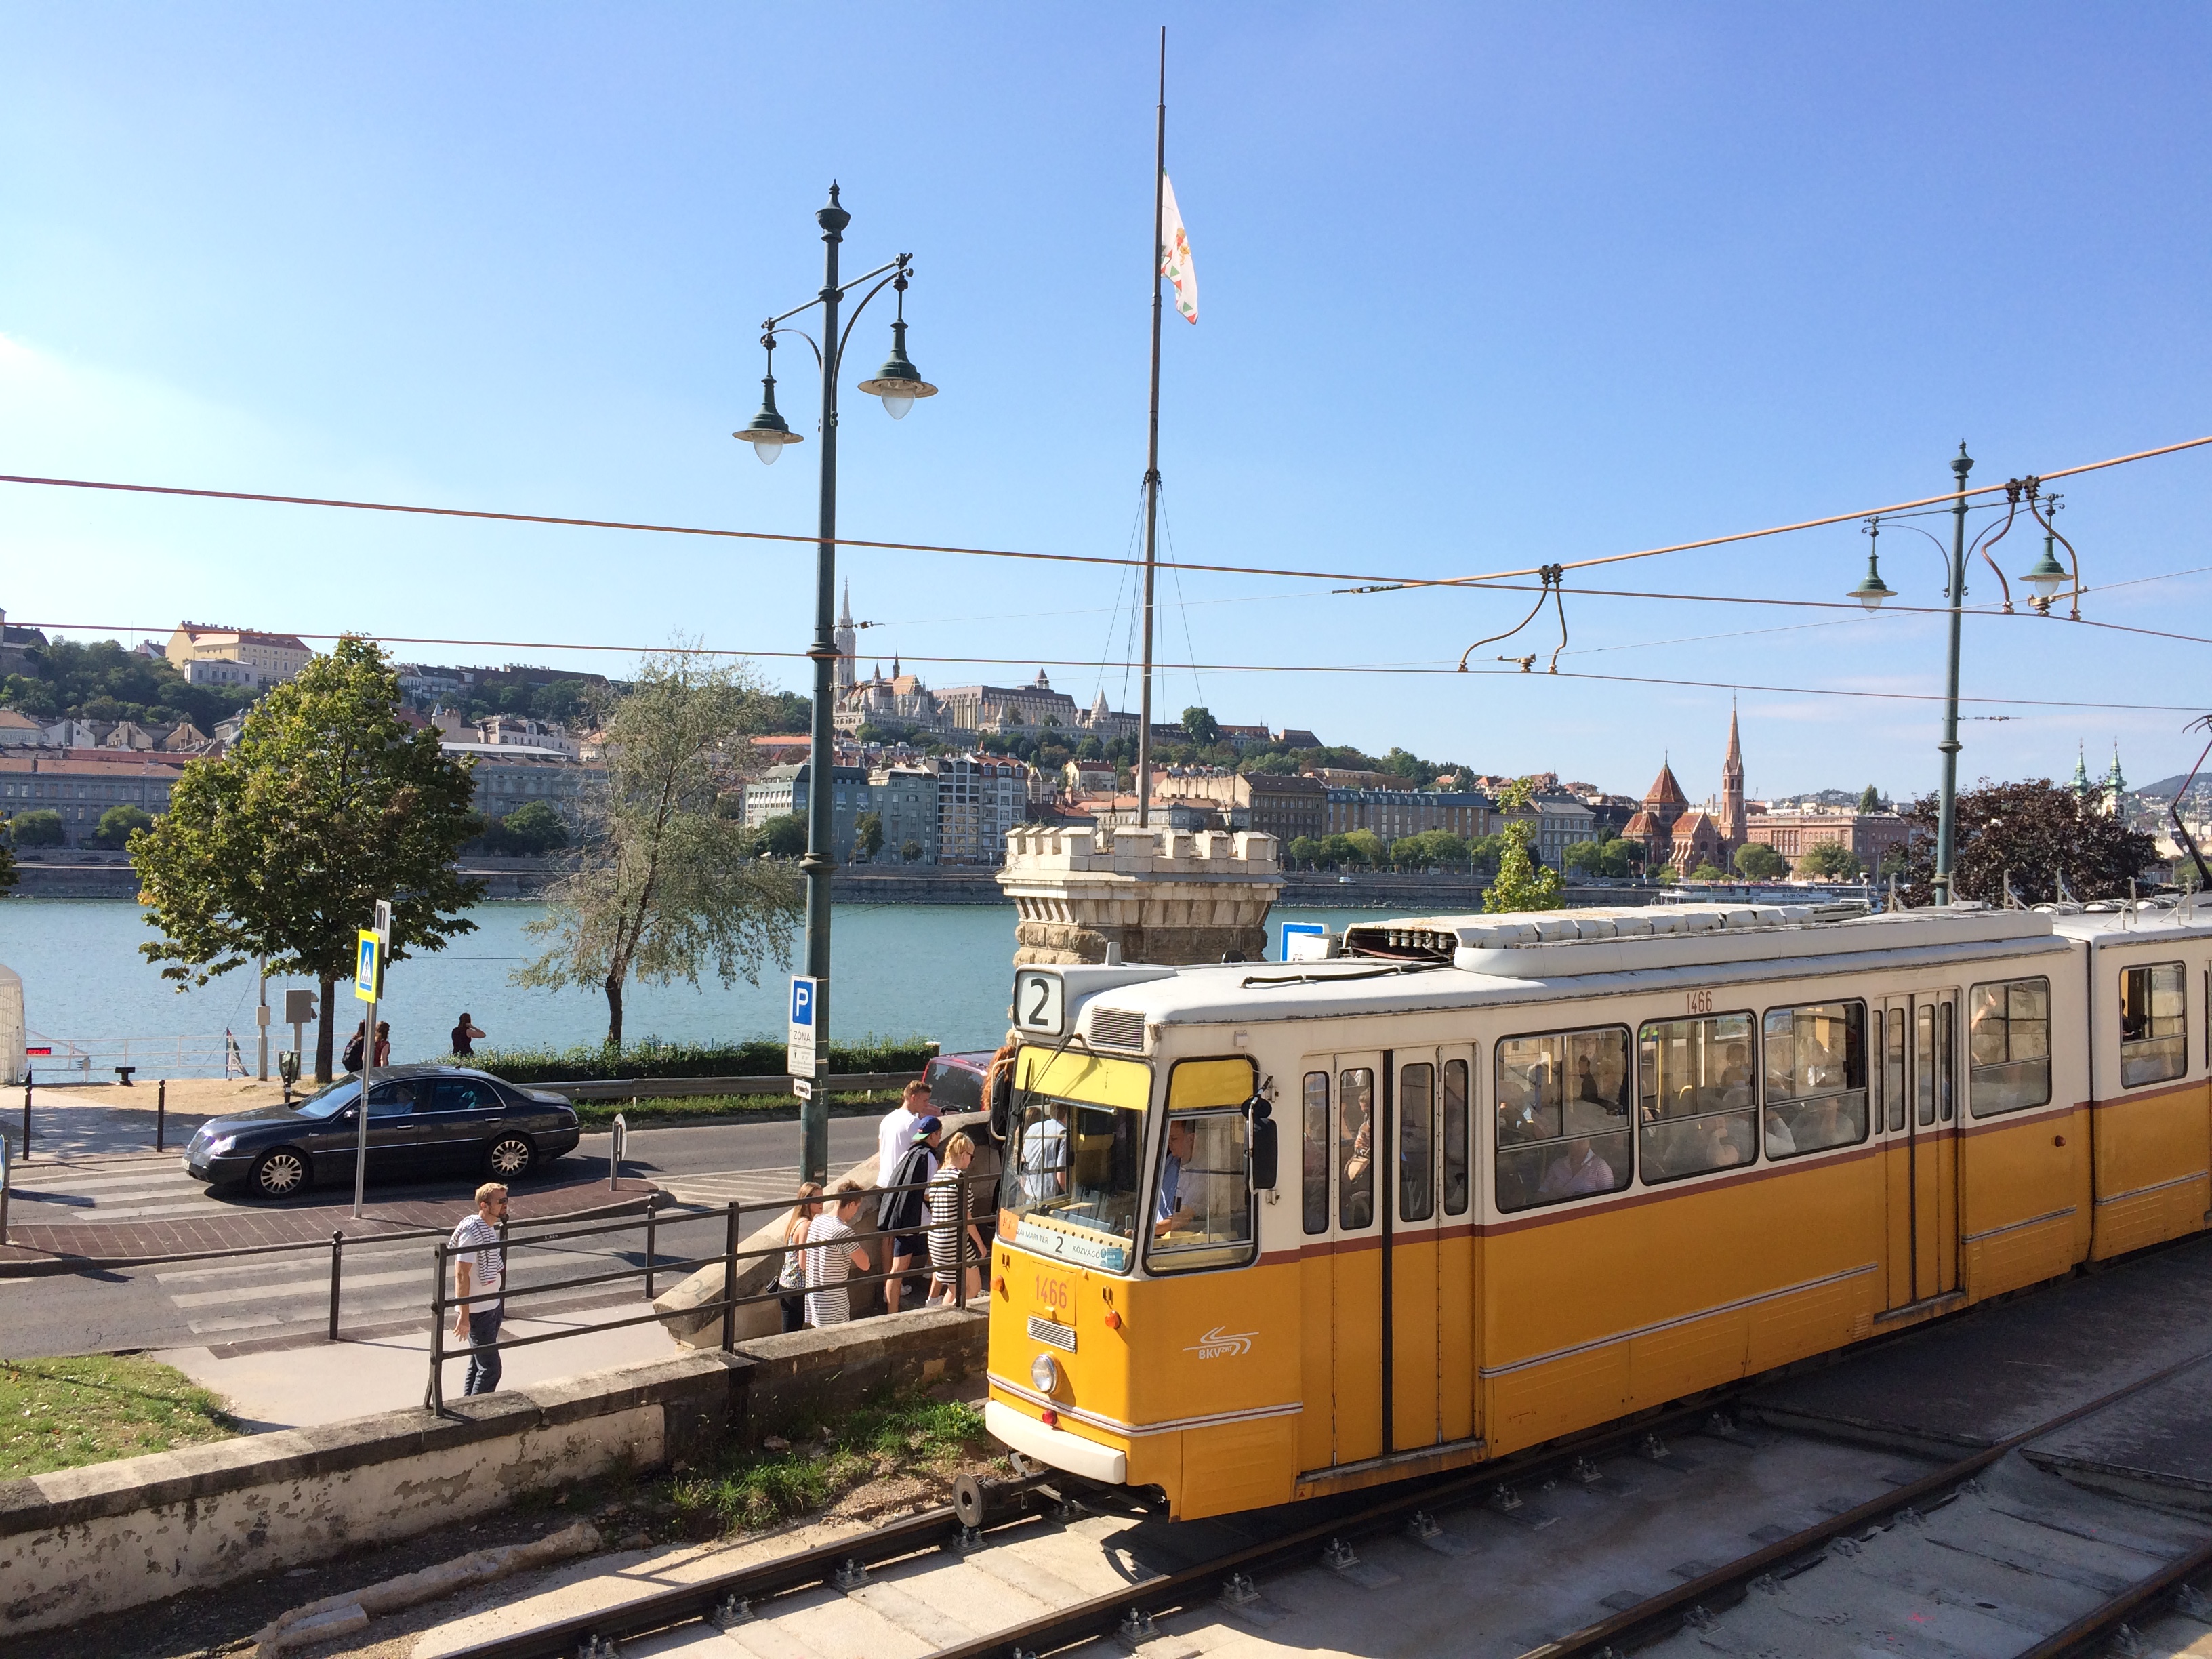 Tram nº 2 bordeando o Rio Danúbio - Budapeste